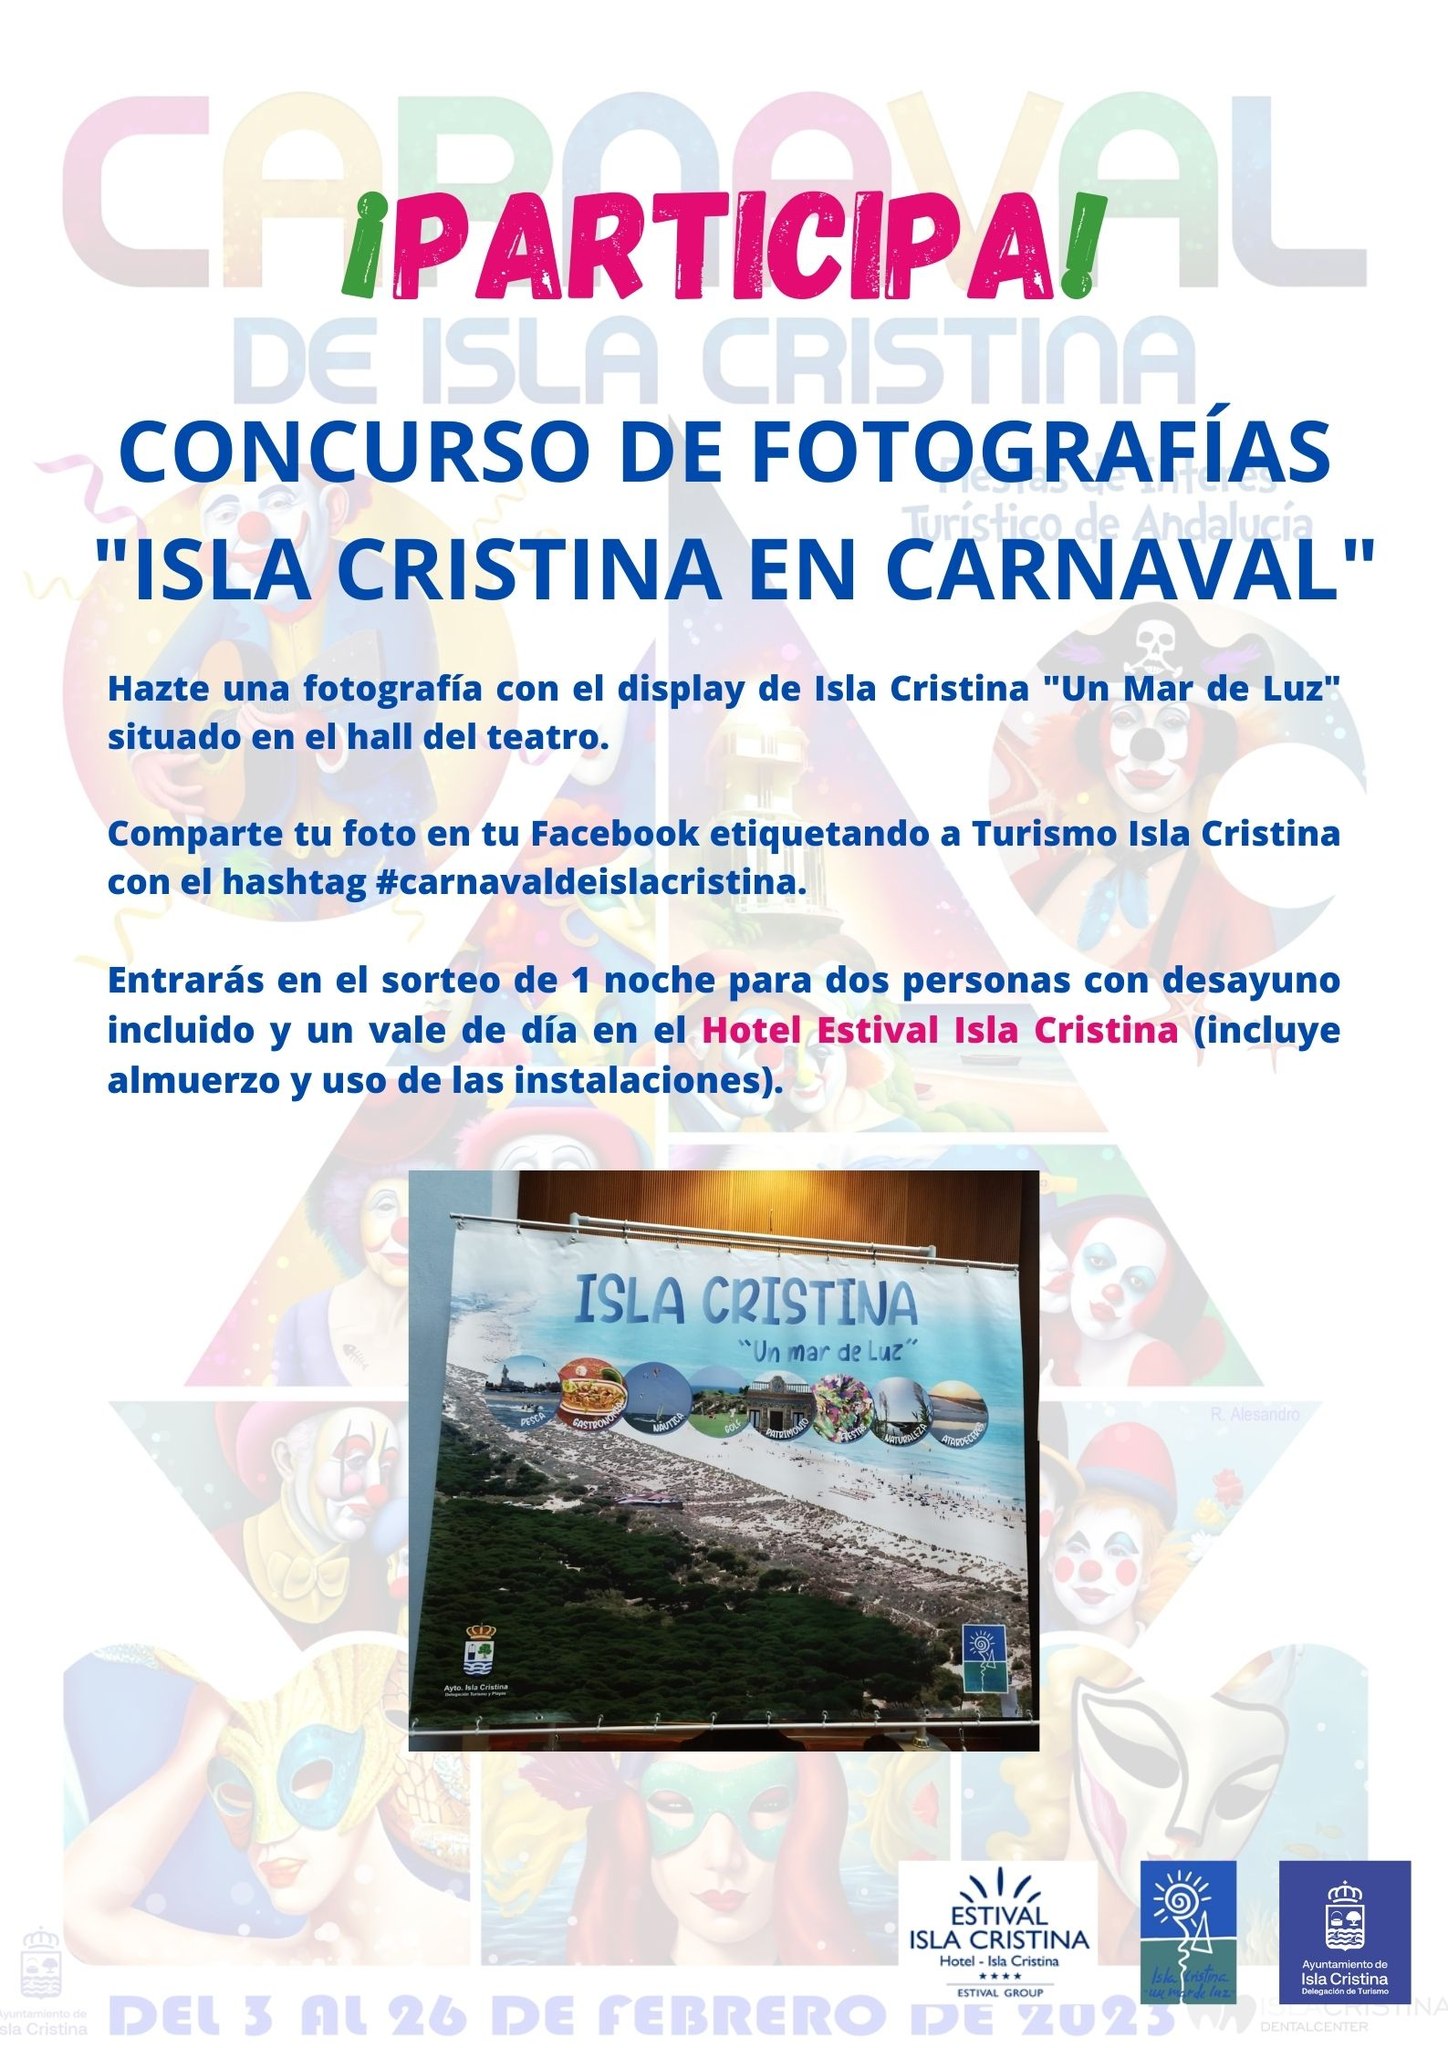 Concurso fotográfico “Isla Cristina en carnaval”